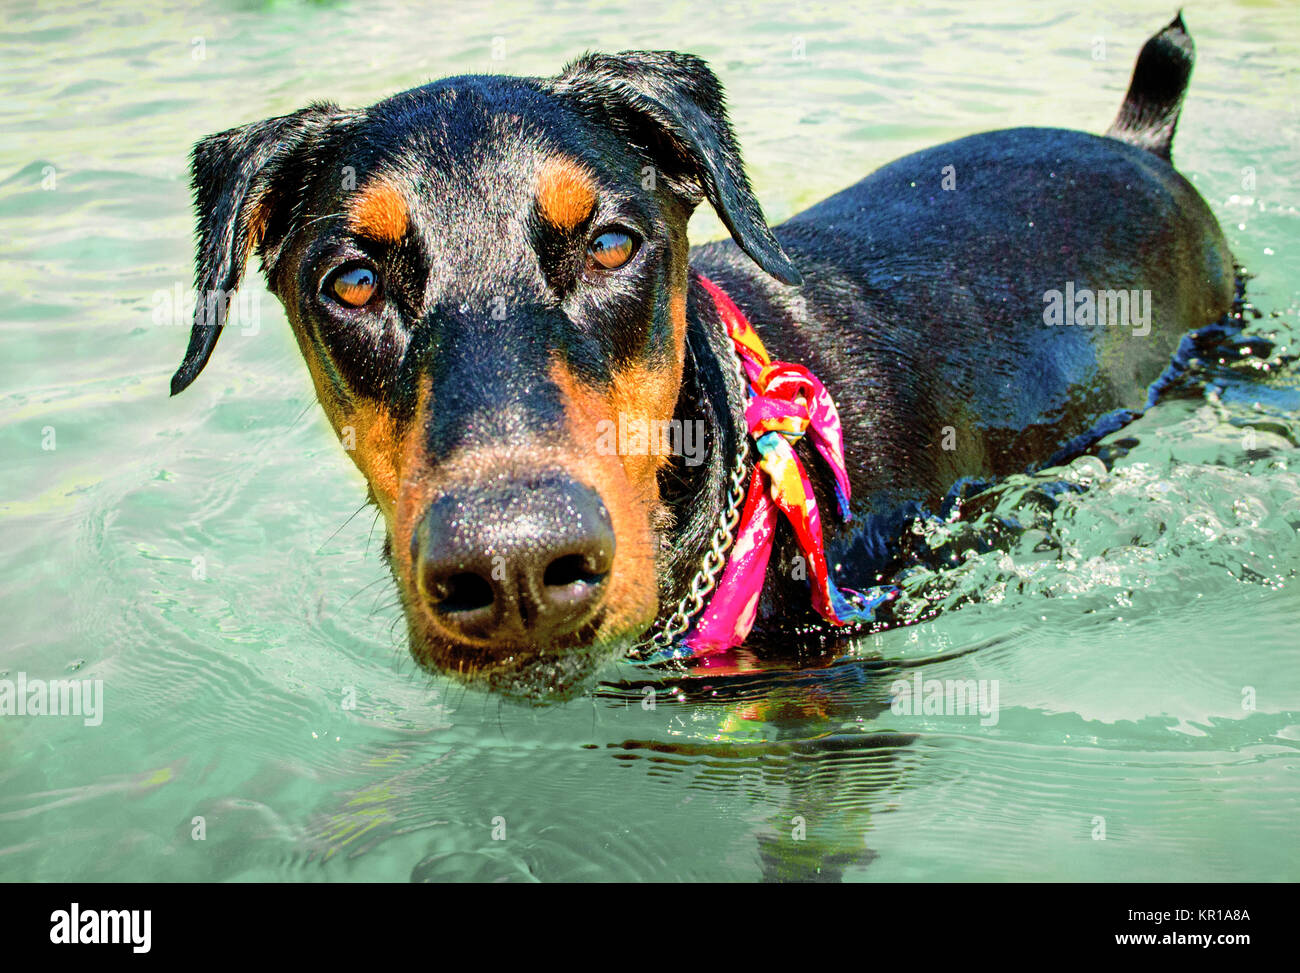 Doberman pinscher dog wearing a bandana standing in ocean Stock Photo